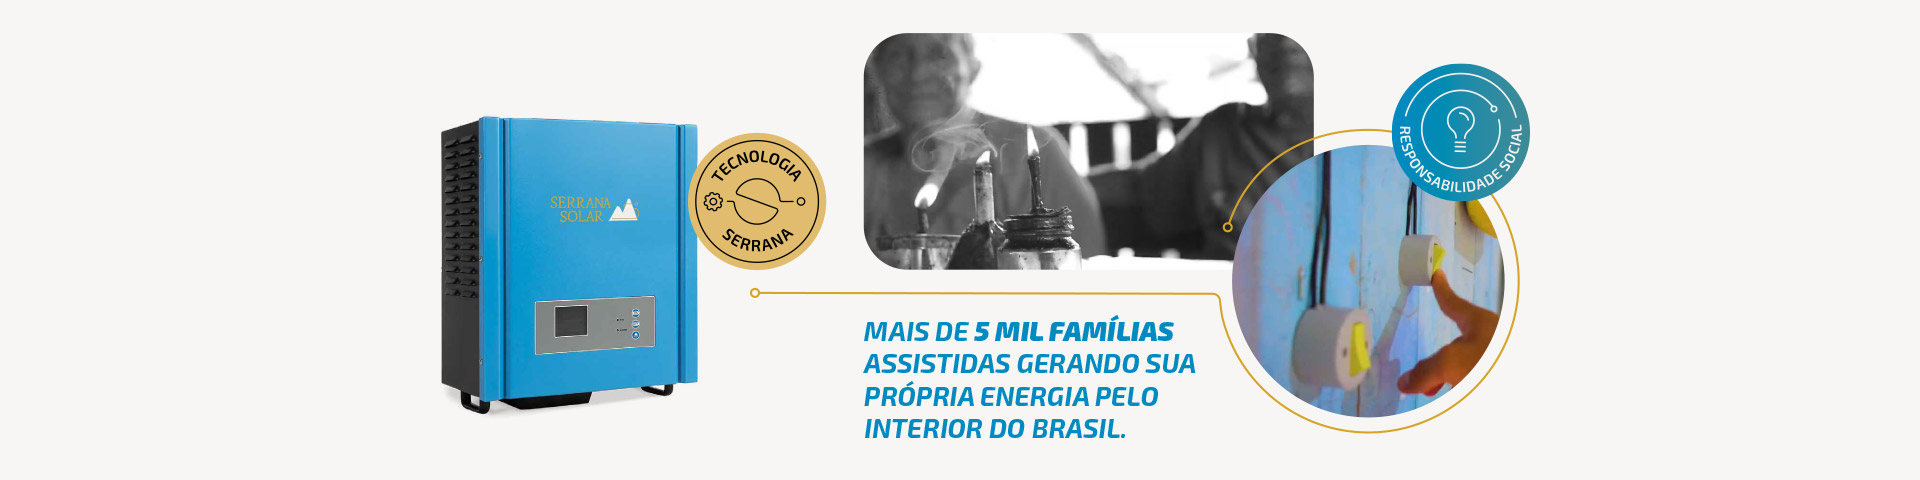 Banner Mais de 5 mil famílias assistidas gerando sua própria energia pelo interior do Brasil